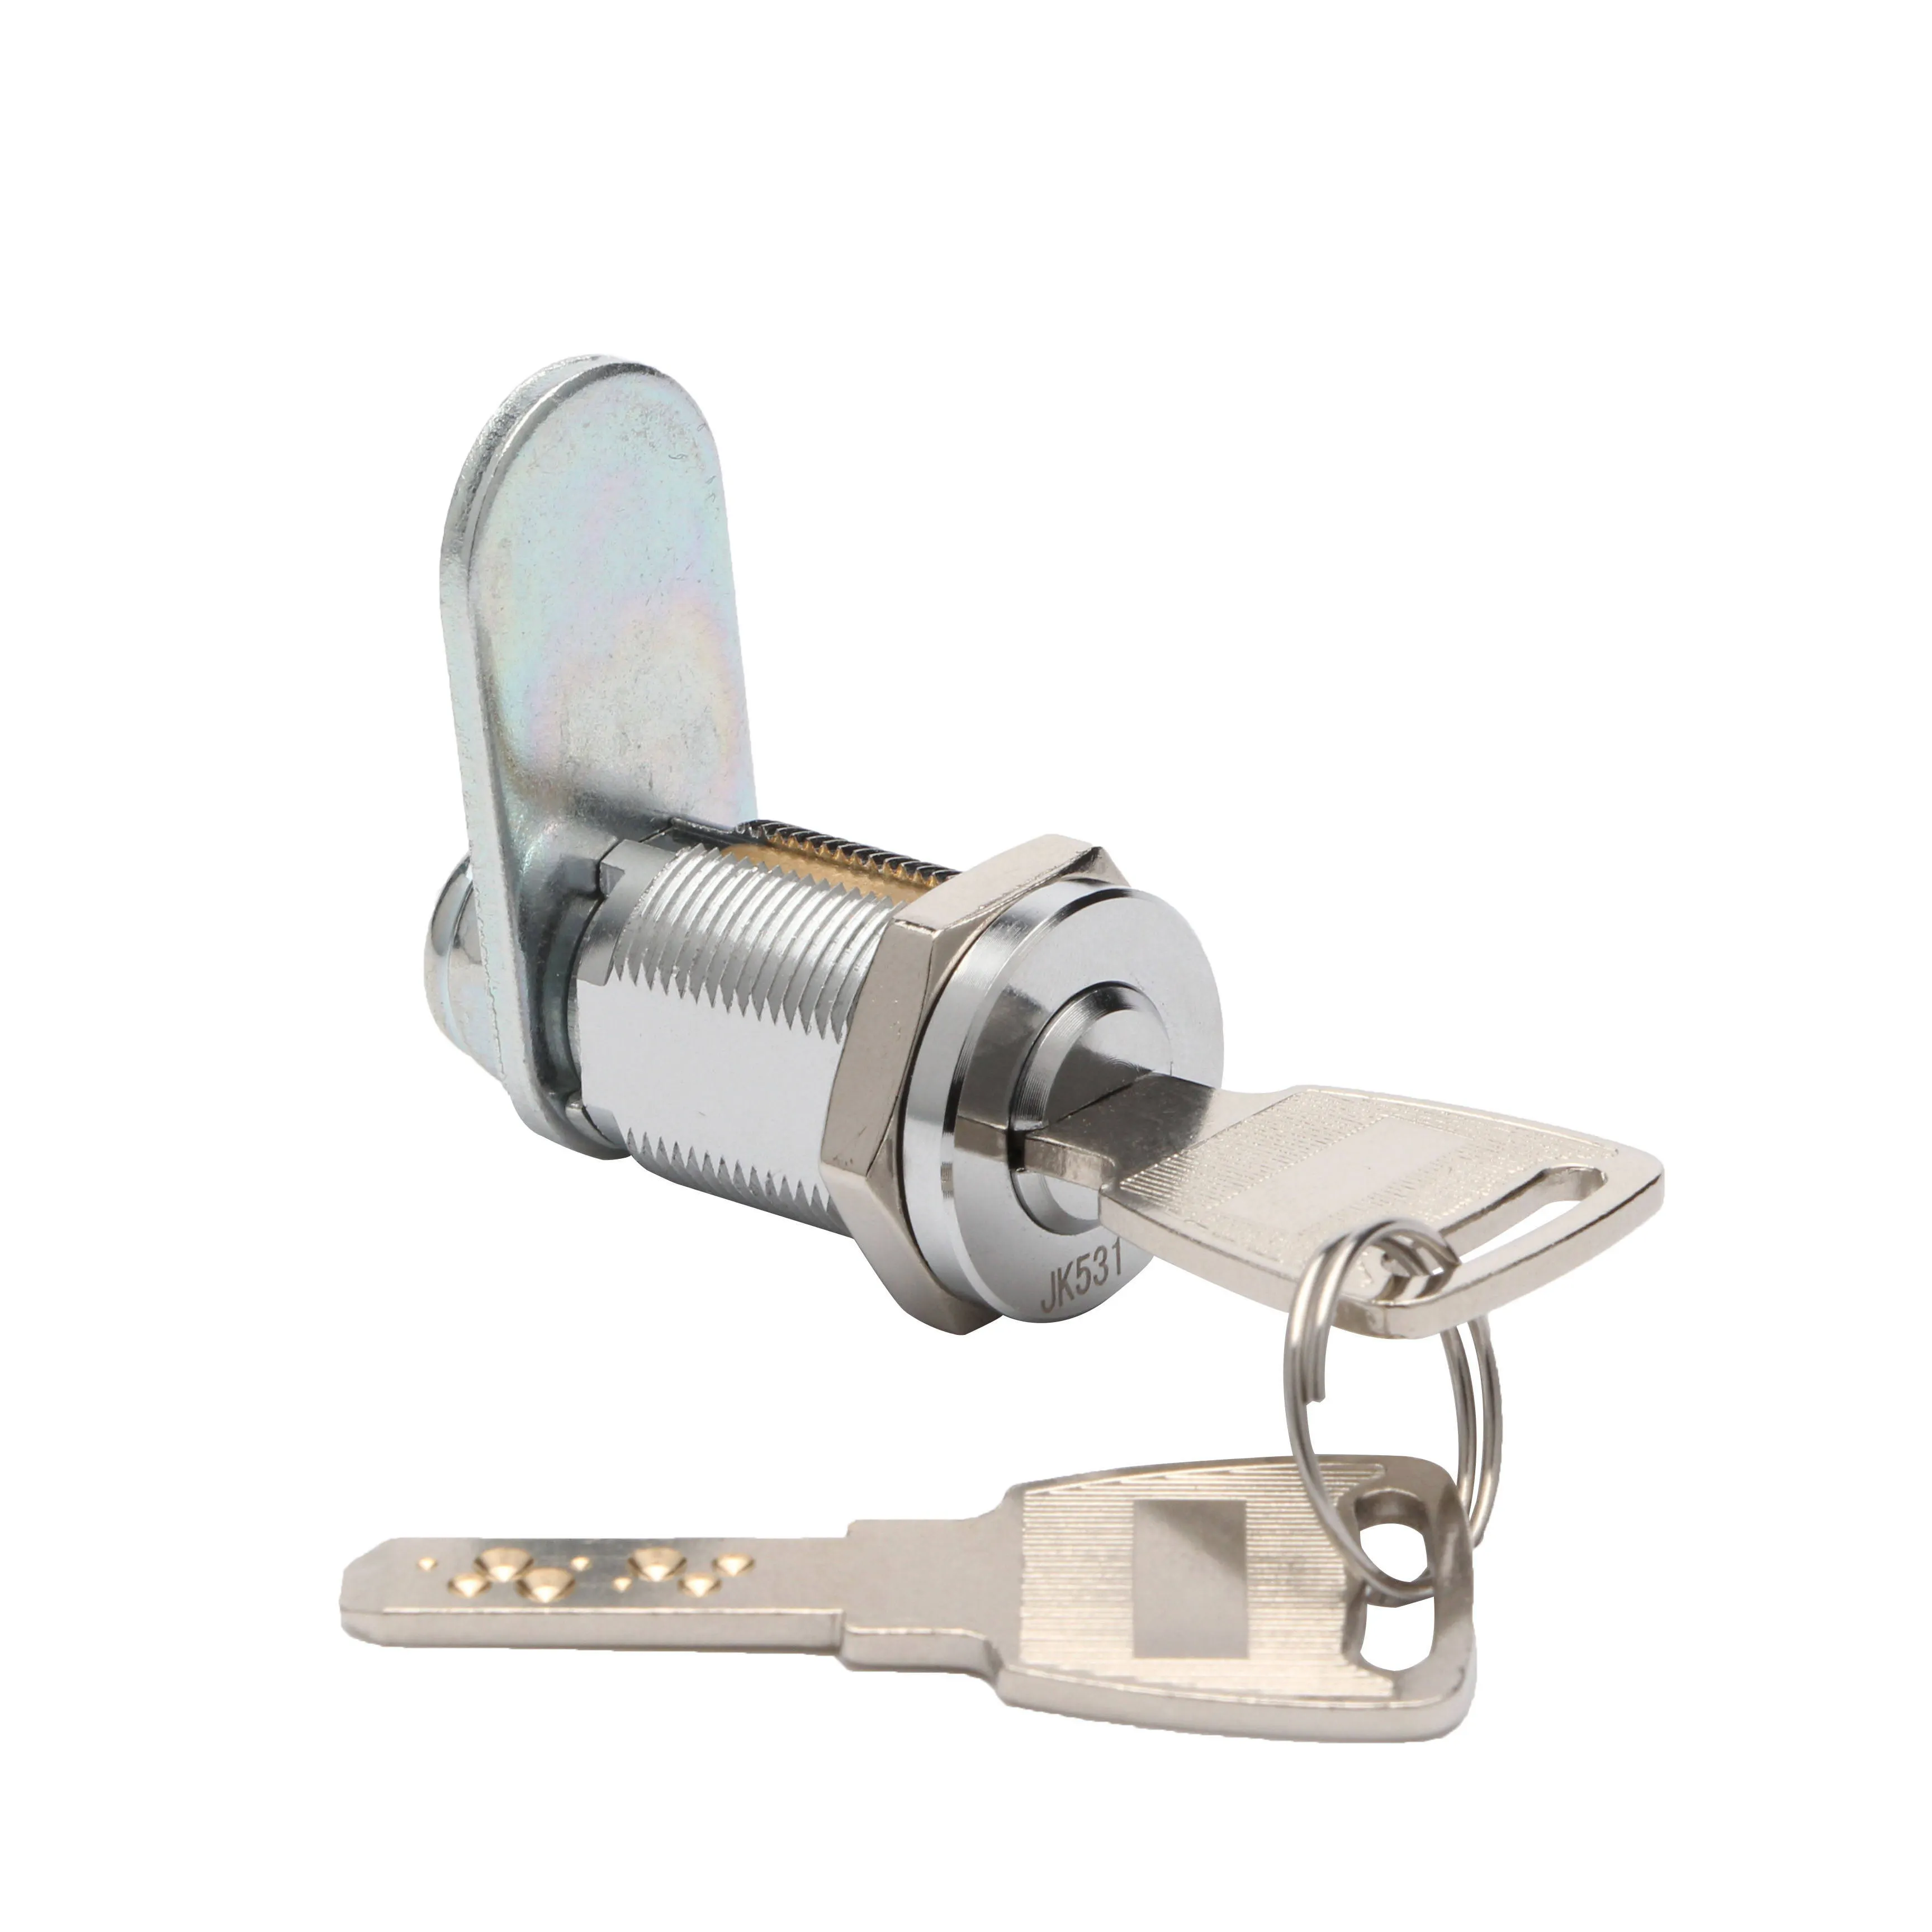 Alta sicurezza JK531 cilindro porta armadio fossetta chiave Cam blocco del distributore automatico serratura a cilindro